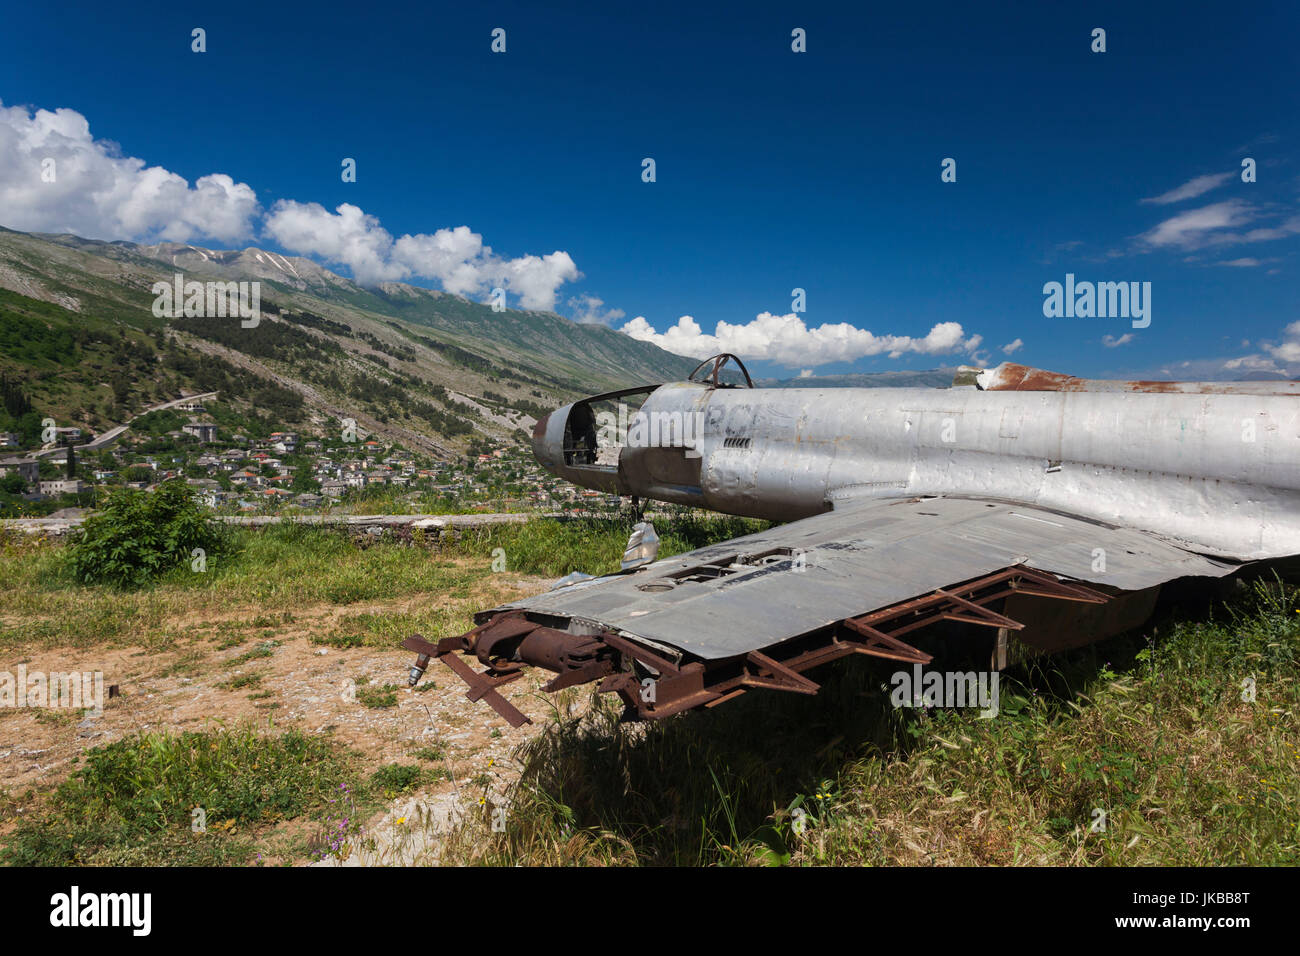 Albanien, Gjirokastra, Burg, Reste der US t-33 Trainer Flugzeug gezwungen über Albanien 1957 Stockfoto